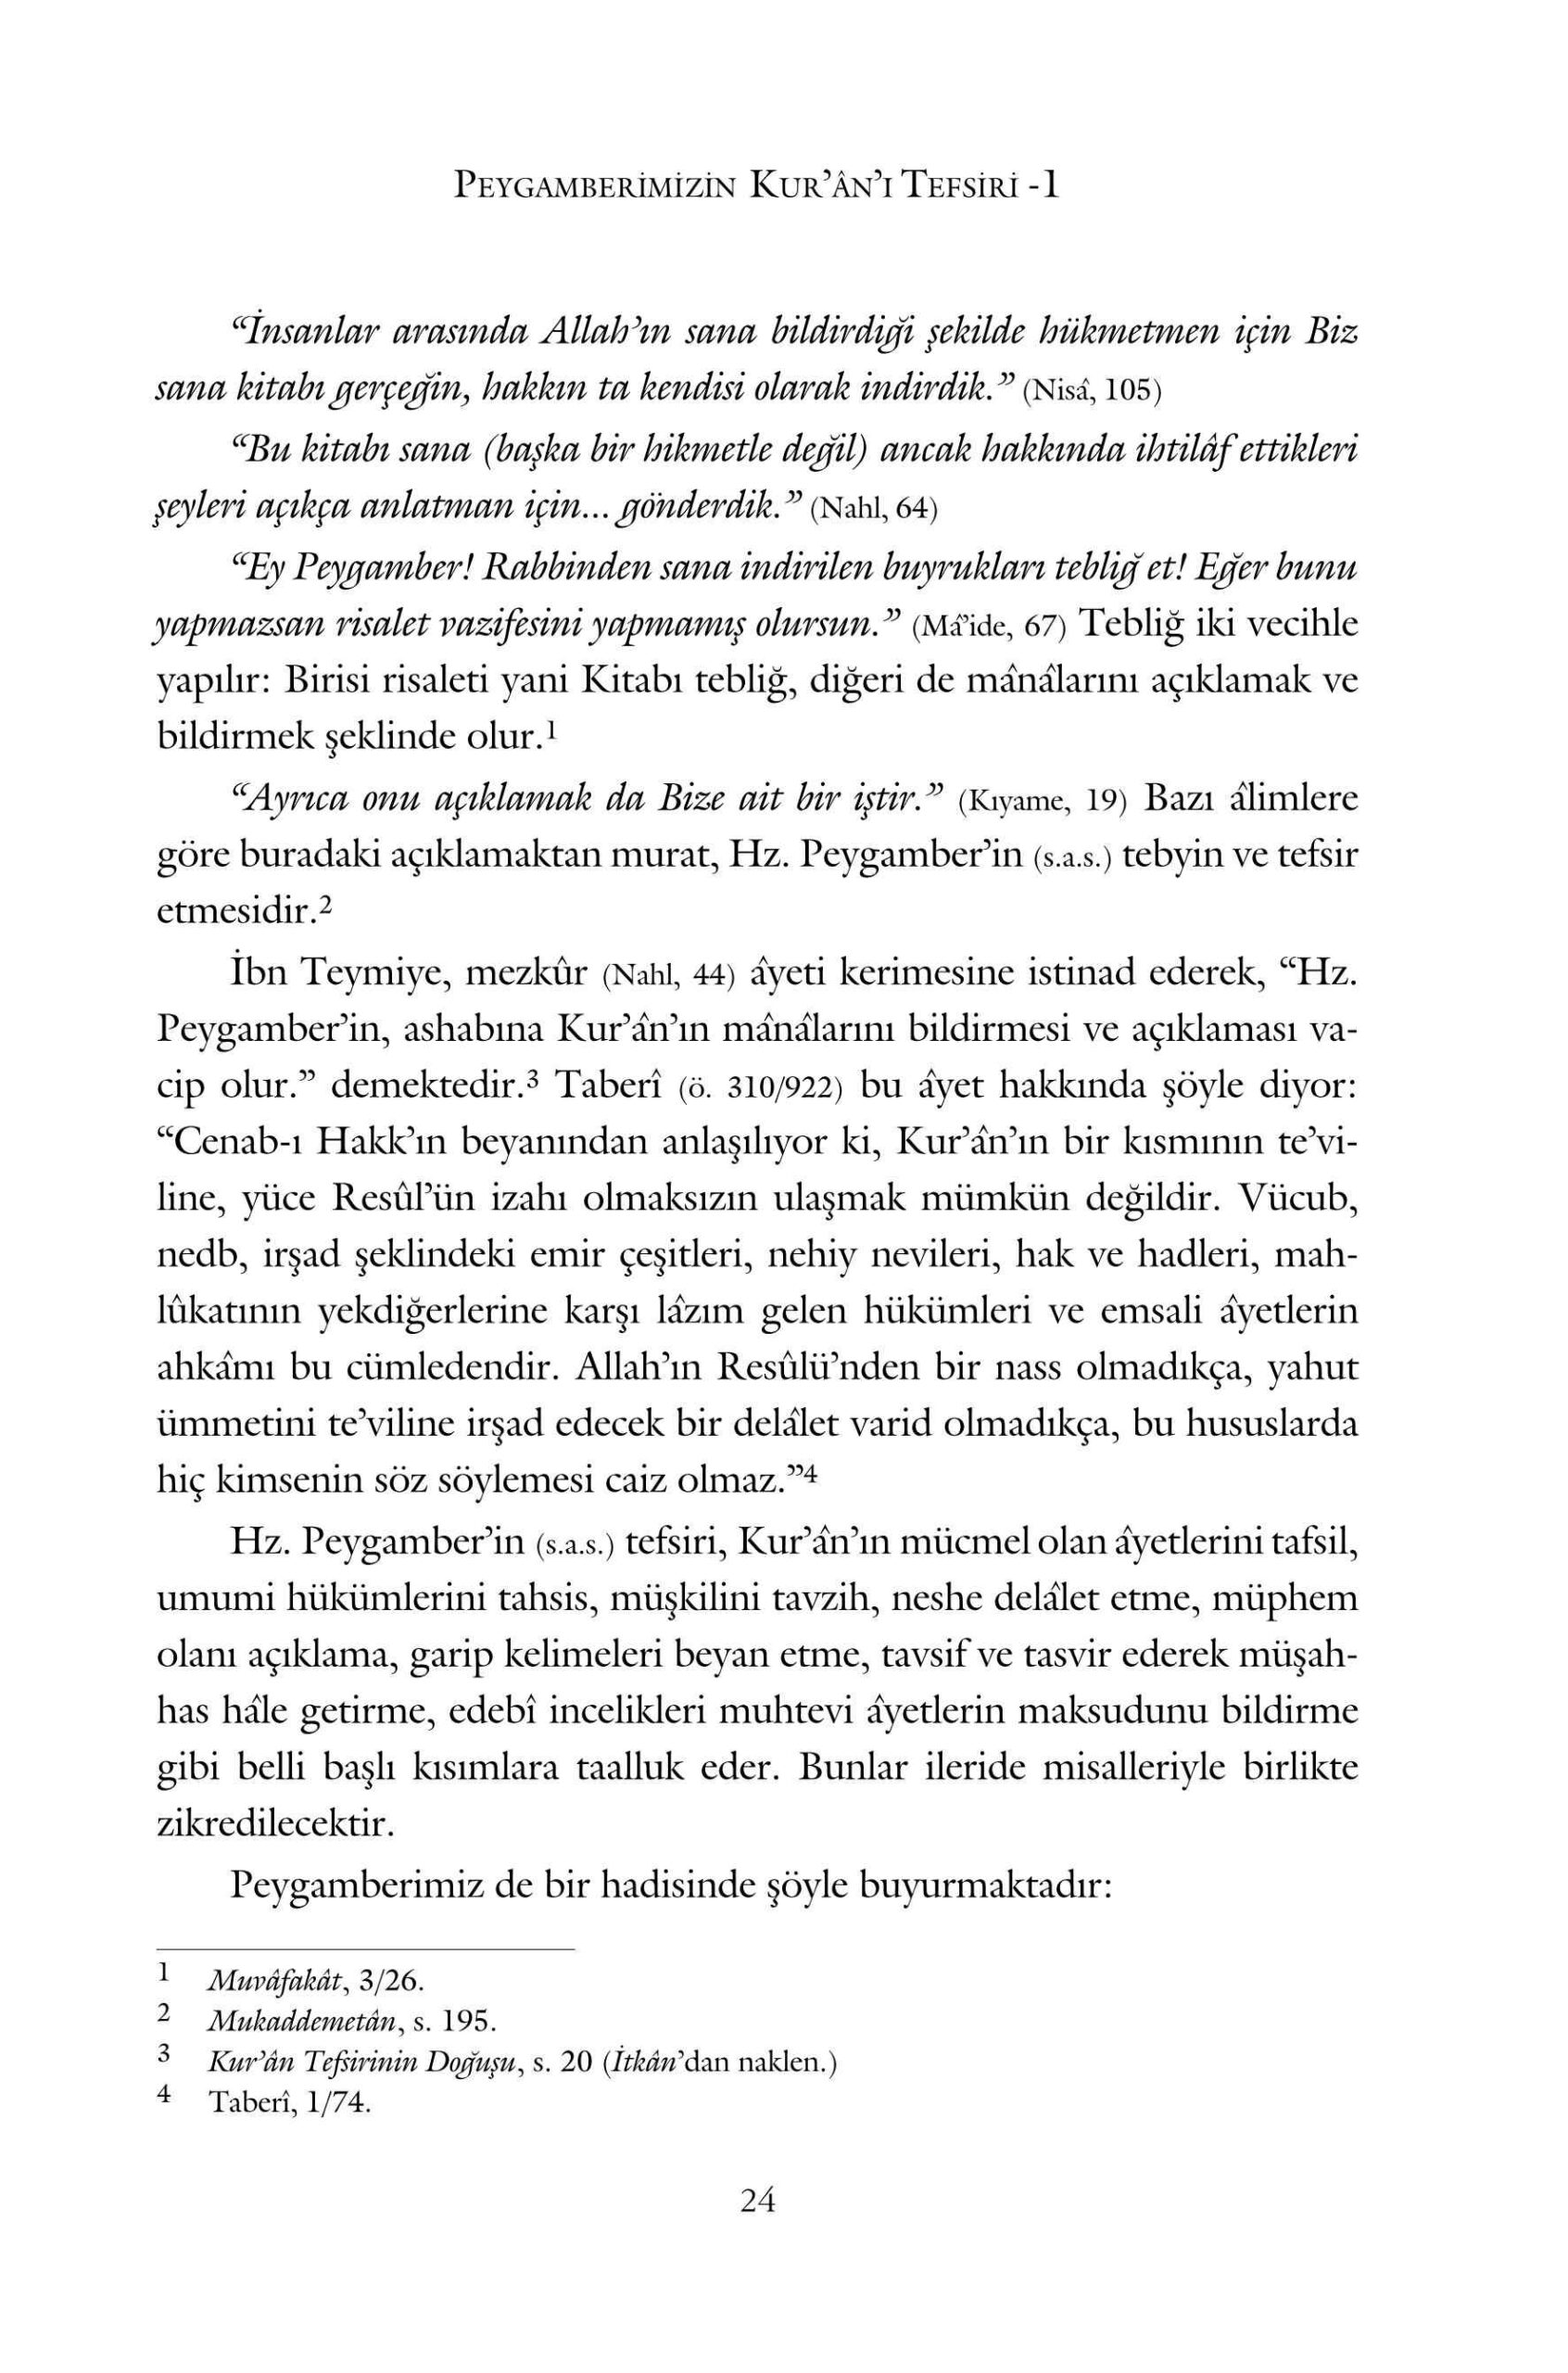 Suat Yildirim - Peygamberimizin Kurani Tefsiri - 1 - IsikAkademiY.pdf, 465-Sayfa 